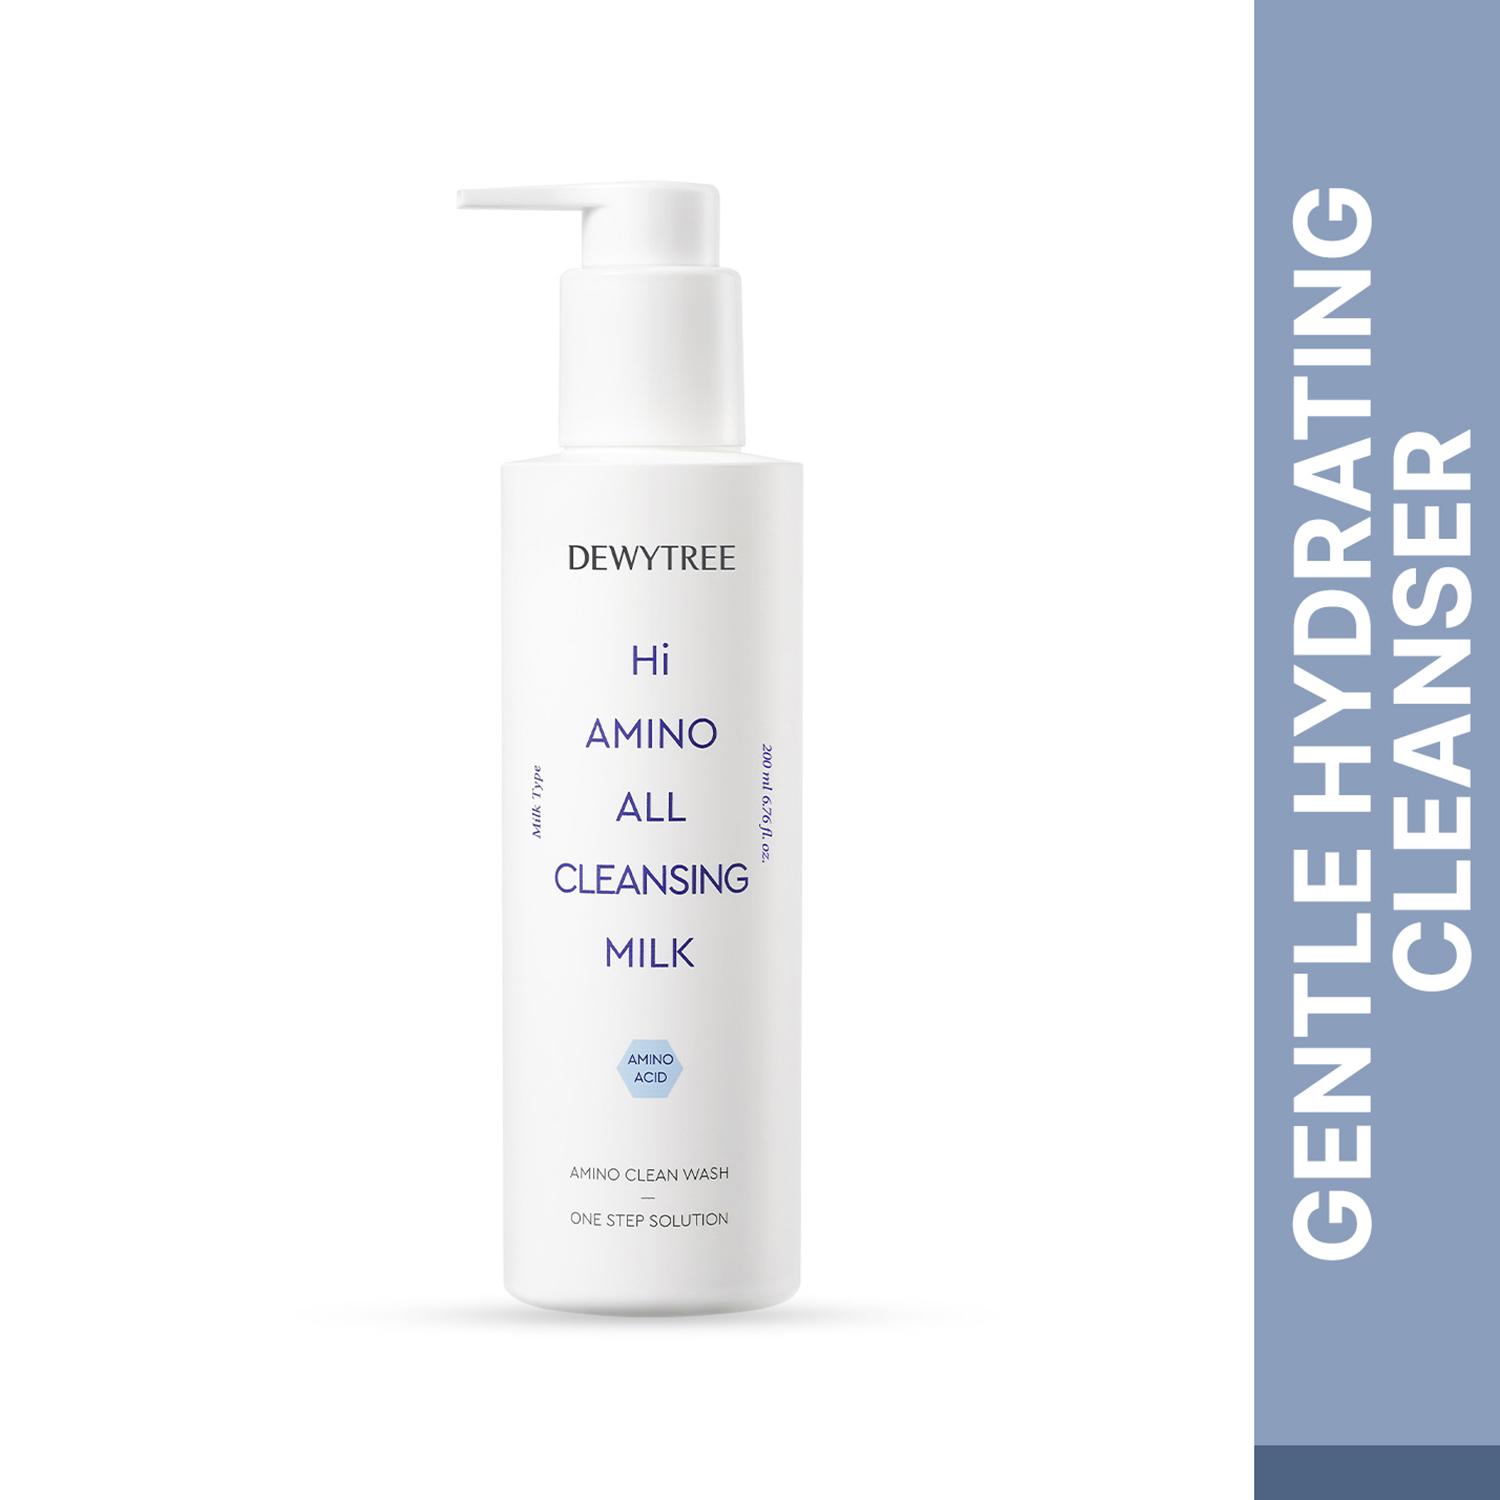 Dewytree | Dewytree Hi Amino All Cleansing Milk (200ml)